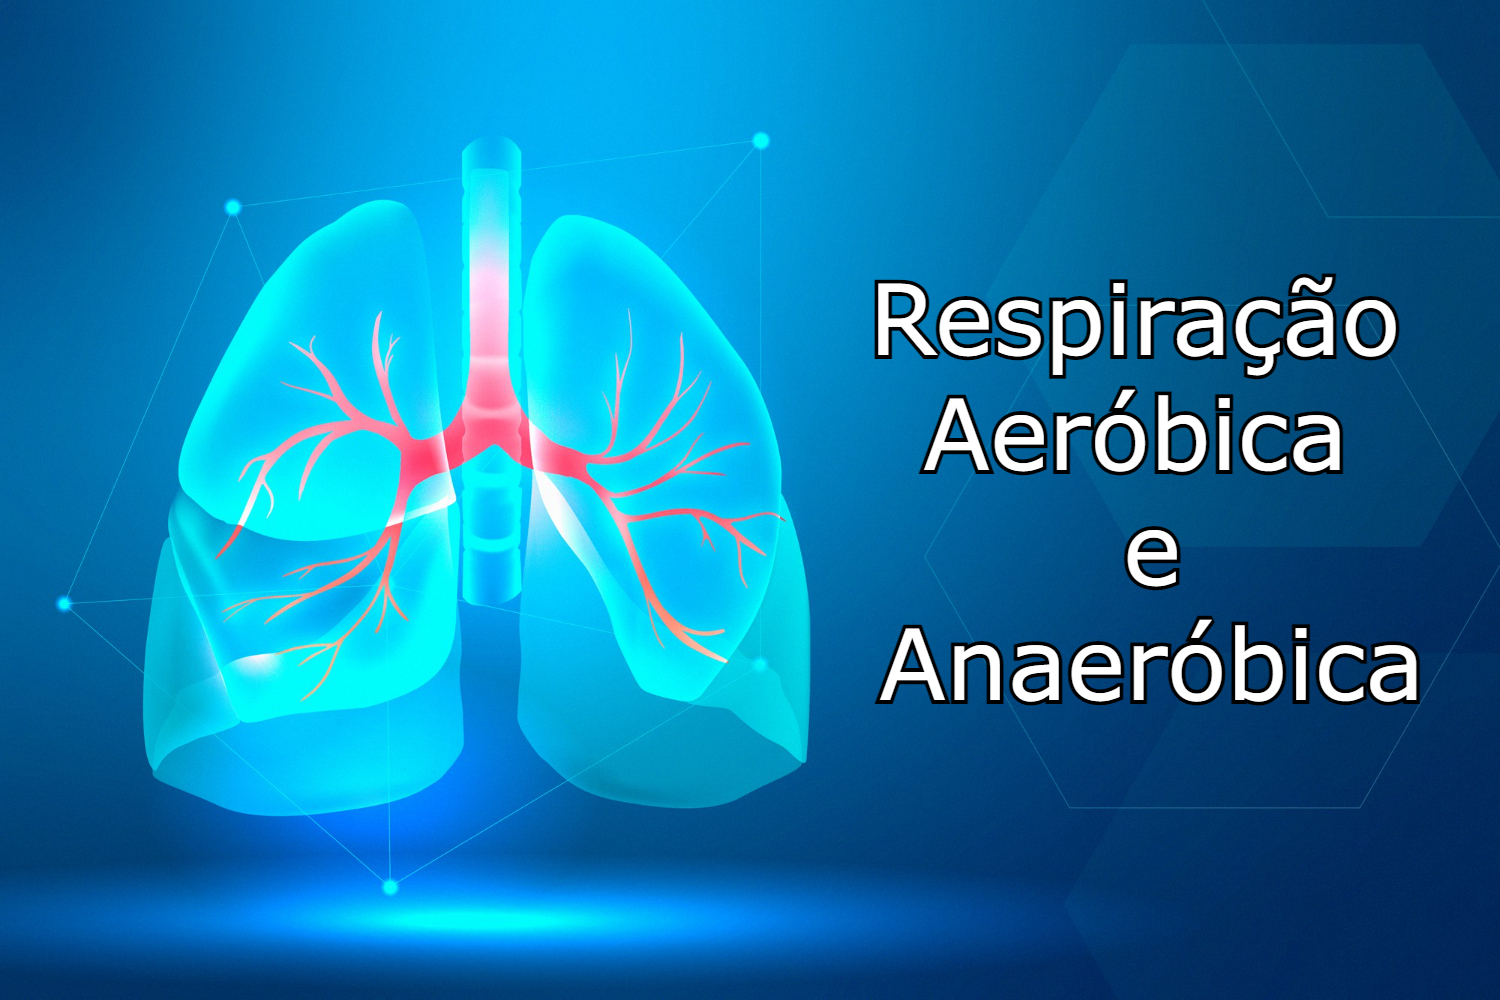 Respiração Aeróbica e Anaeróbica: quais as diferenças? (Imagem: Rawpixel.com/FreePik.com)